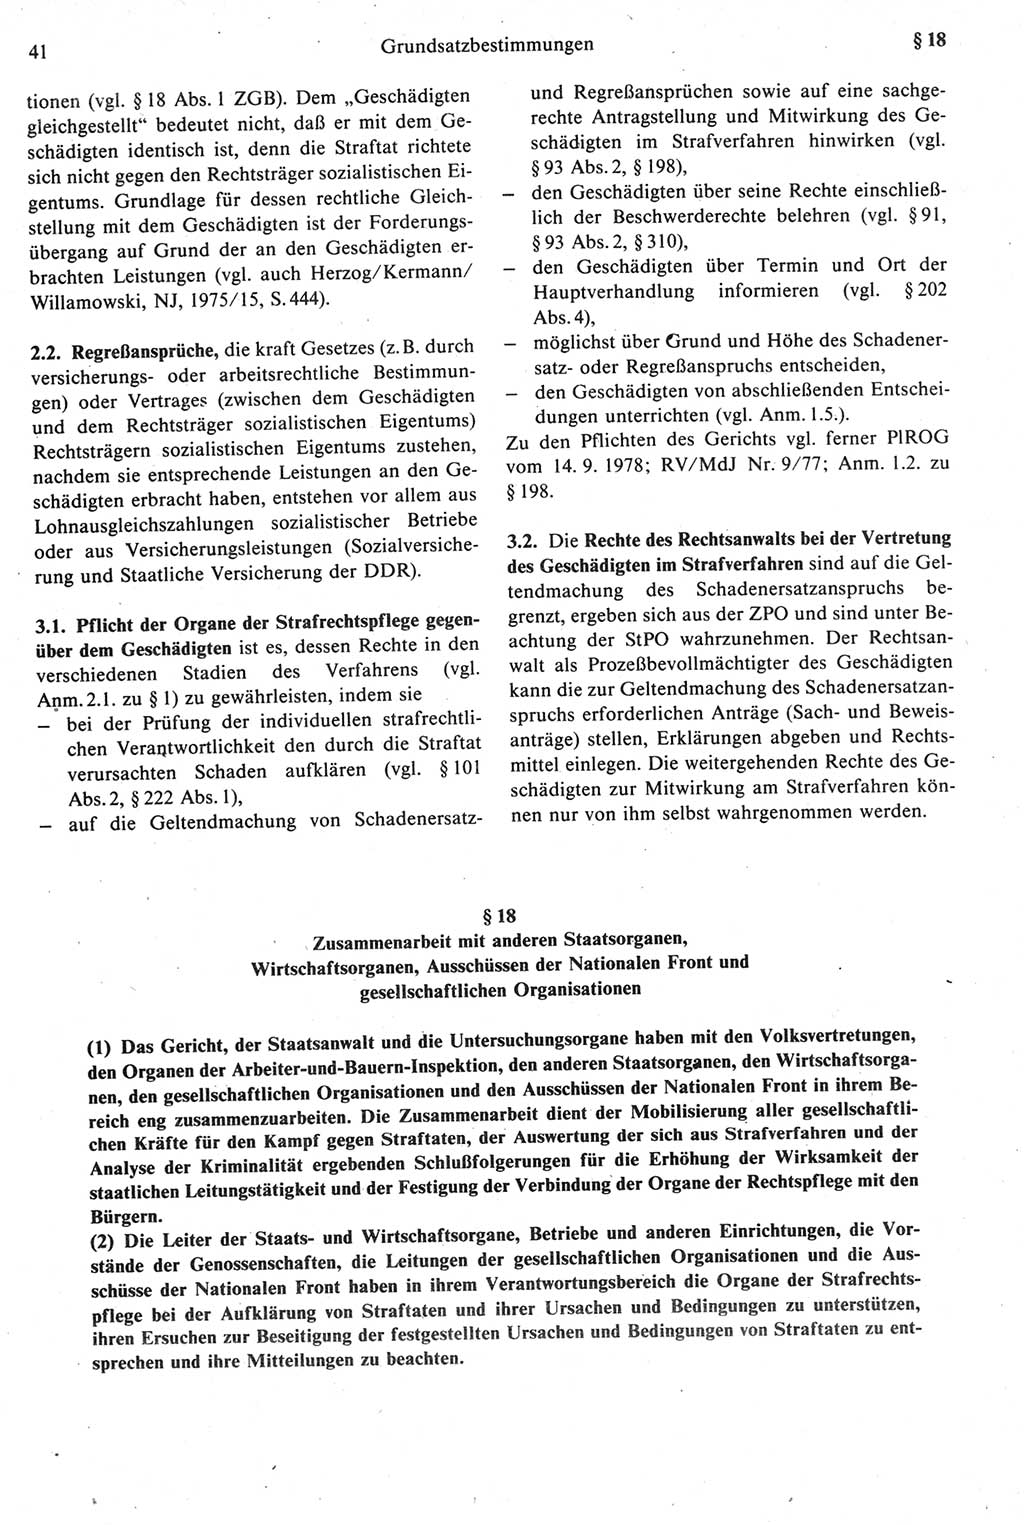 Strafprozeßrecht der DDR [Deutsche Demokratische Republik], Kommentar zur Strafprozeßordnung (StPO) 1987, Seite 41 (Strafprozeßr. DDR Komm. StPO 1987, S. 41)